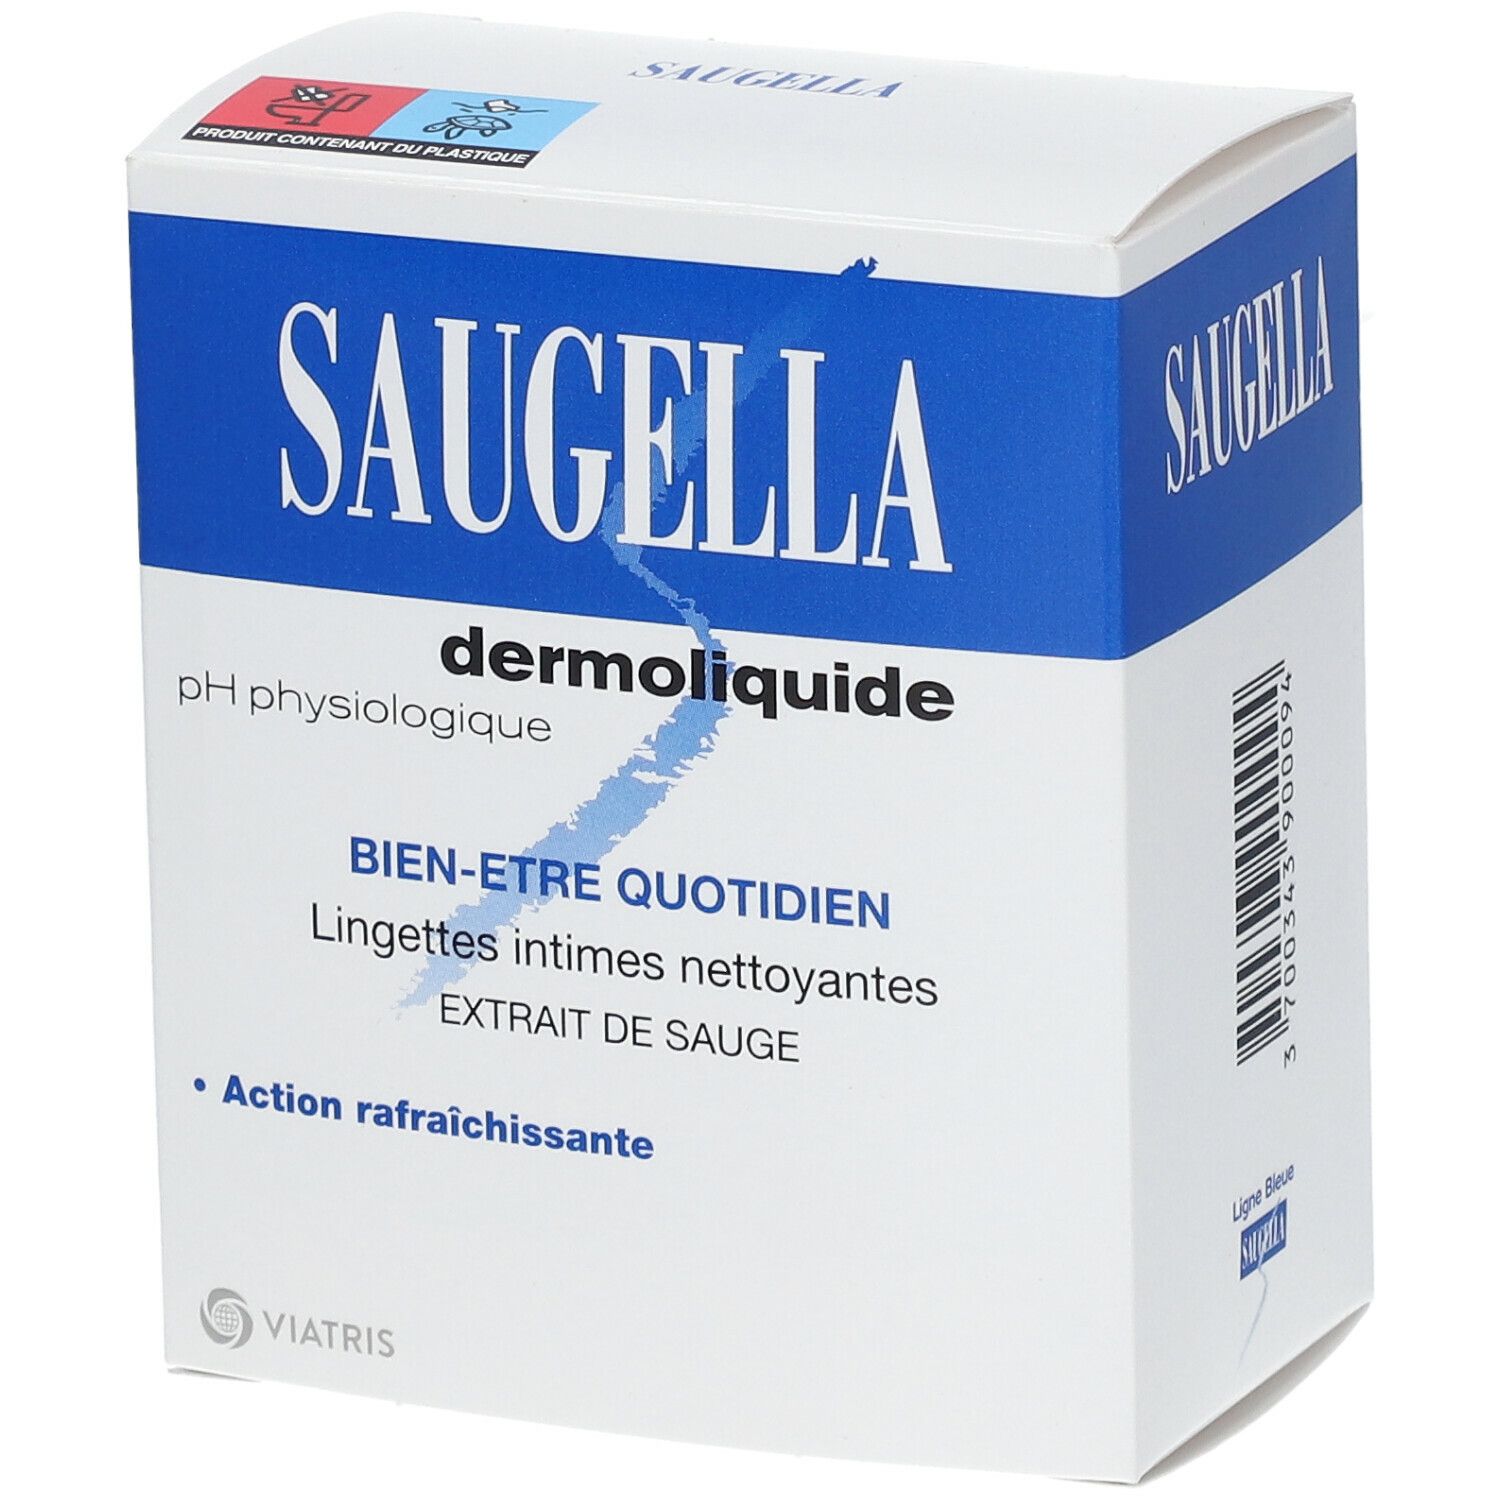 Image of Saugella Dermoliquide Lingettes